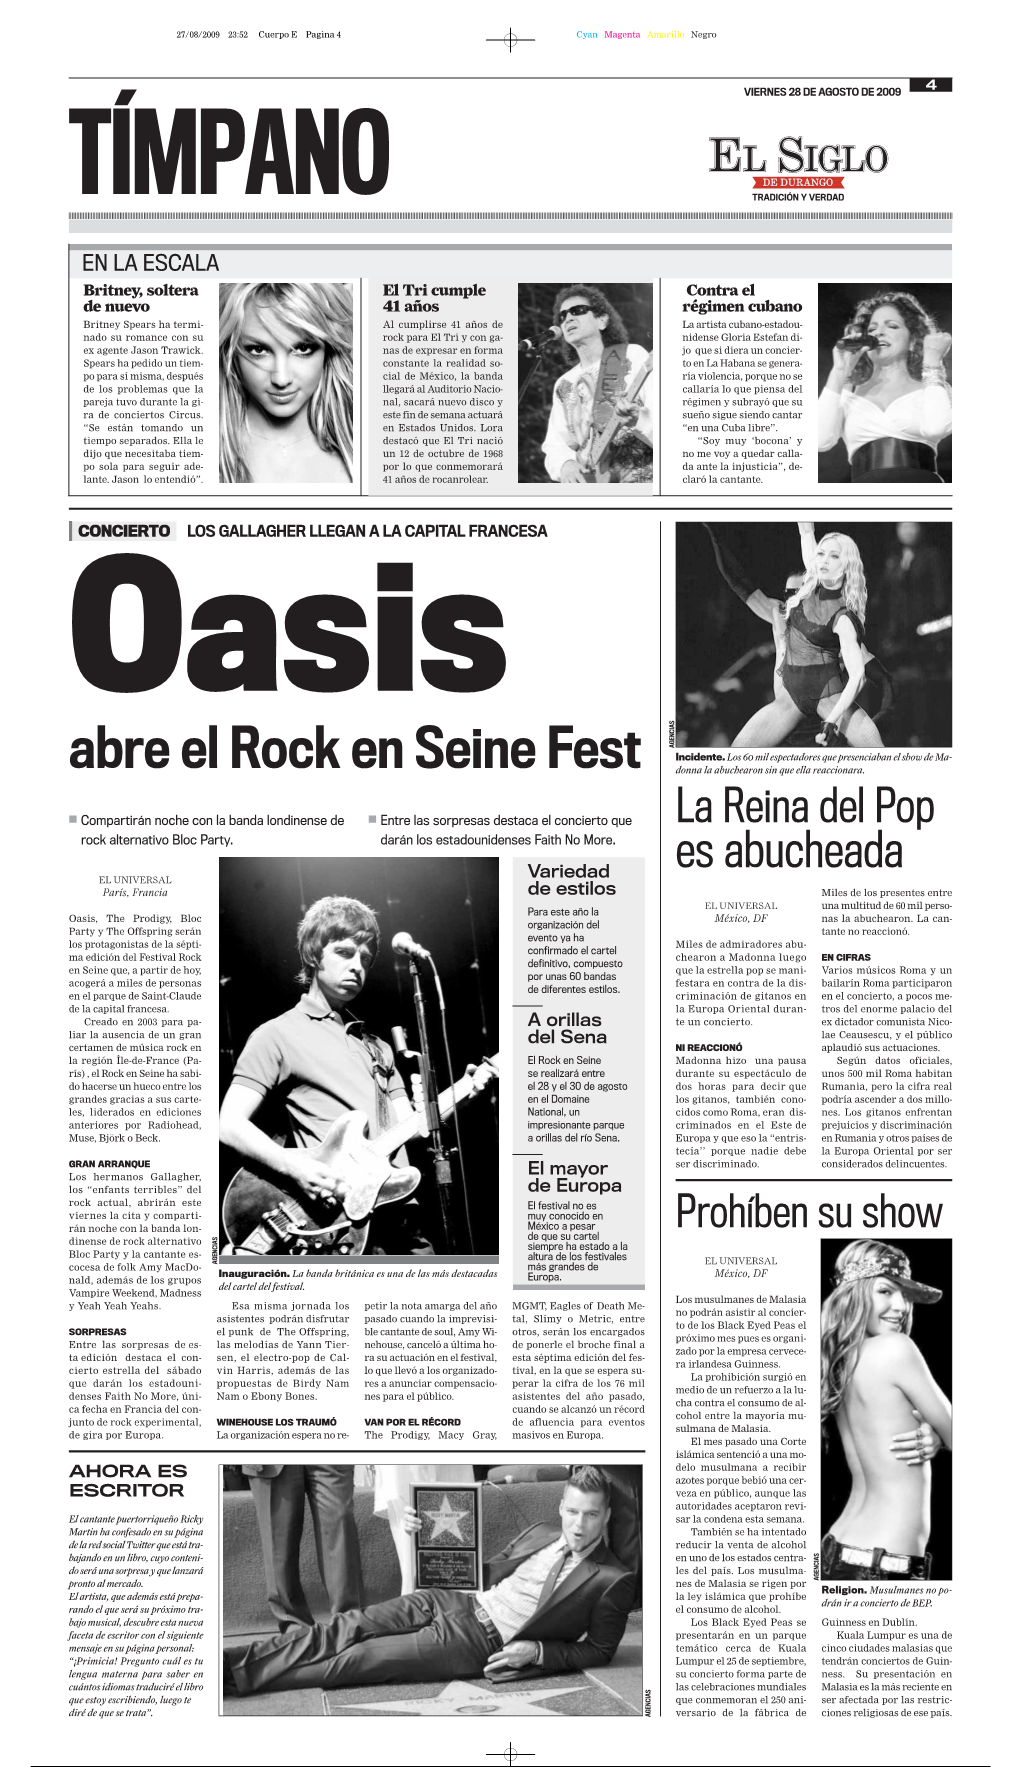 Abre El Rock En Seine Fest Donna La Abuchearon Sin Que Ella Reaccionara